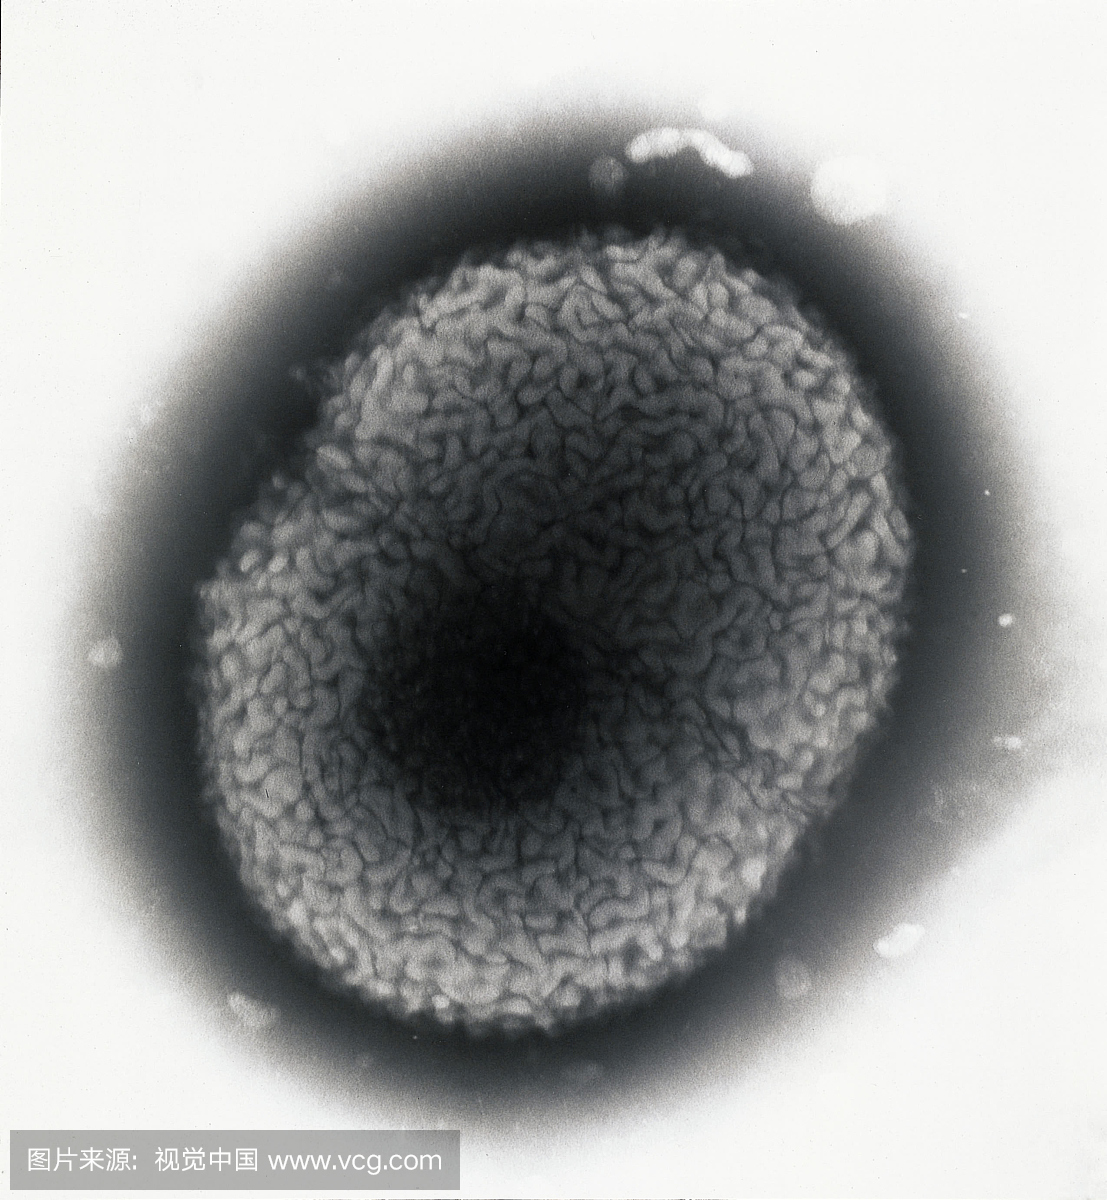 分离的淋病奈瑟氏球菌的阴性染色细胞,当用阴